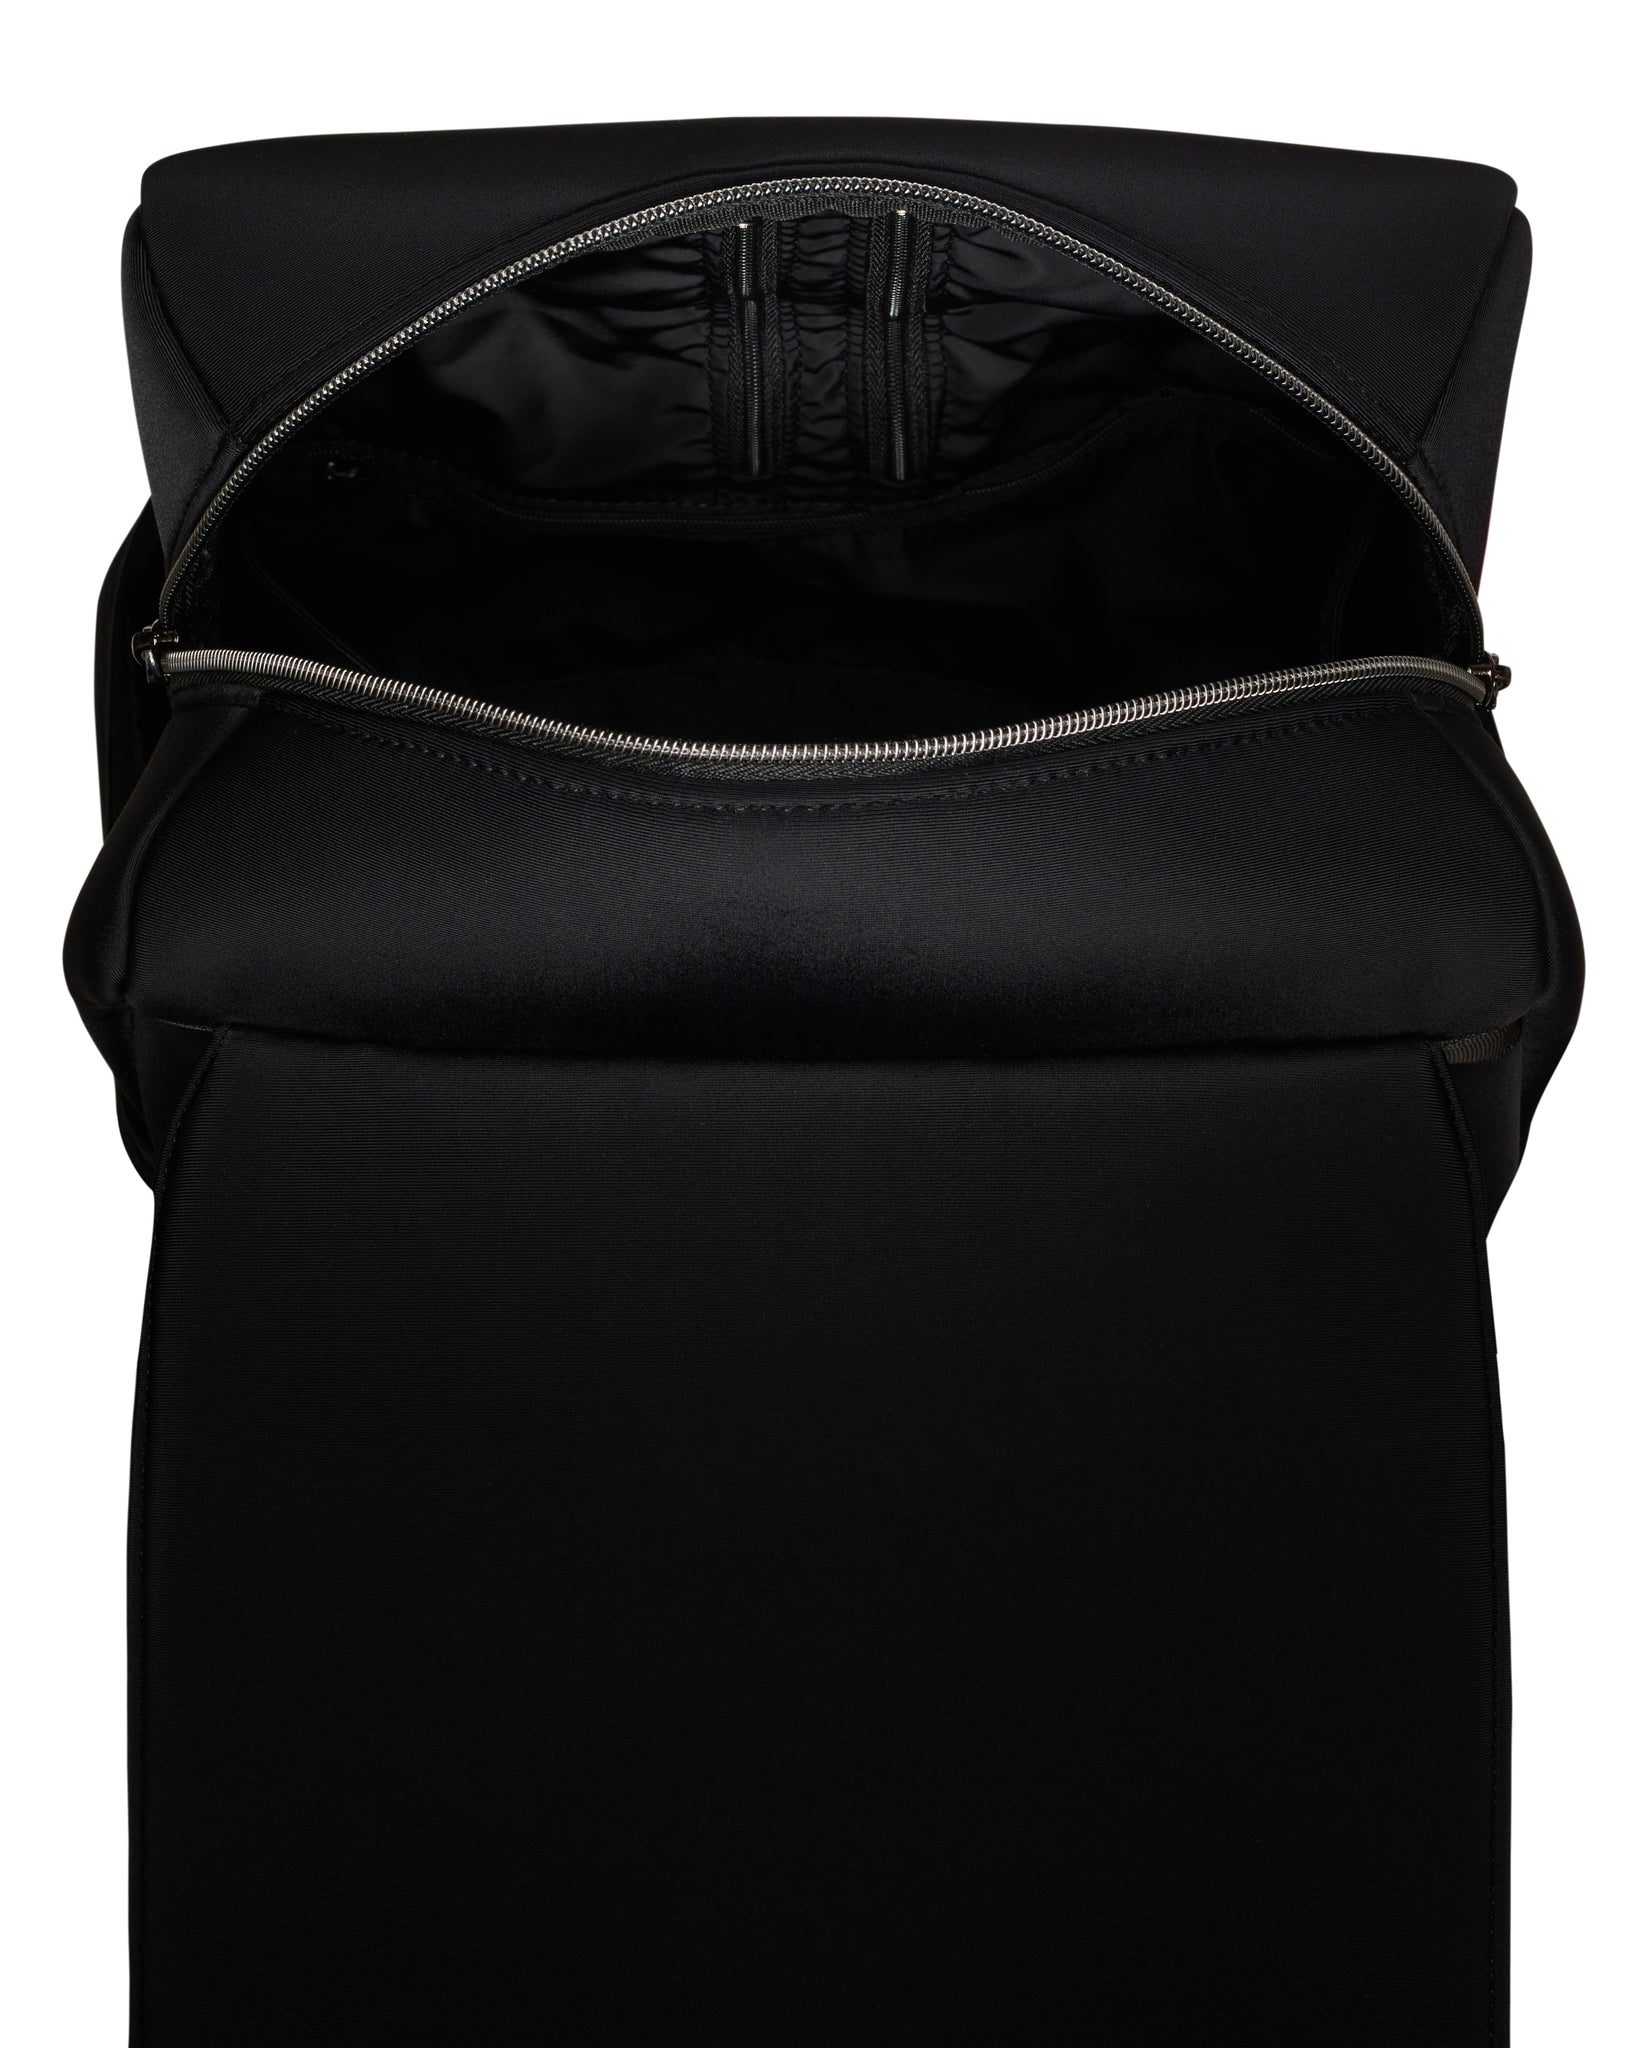 The Flynn Backpack (BLACK) Neoprene Bag – Prene